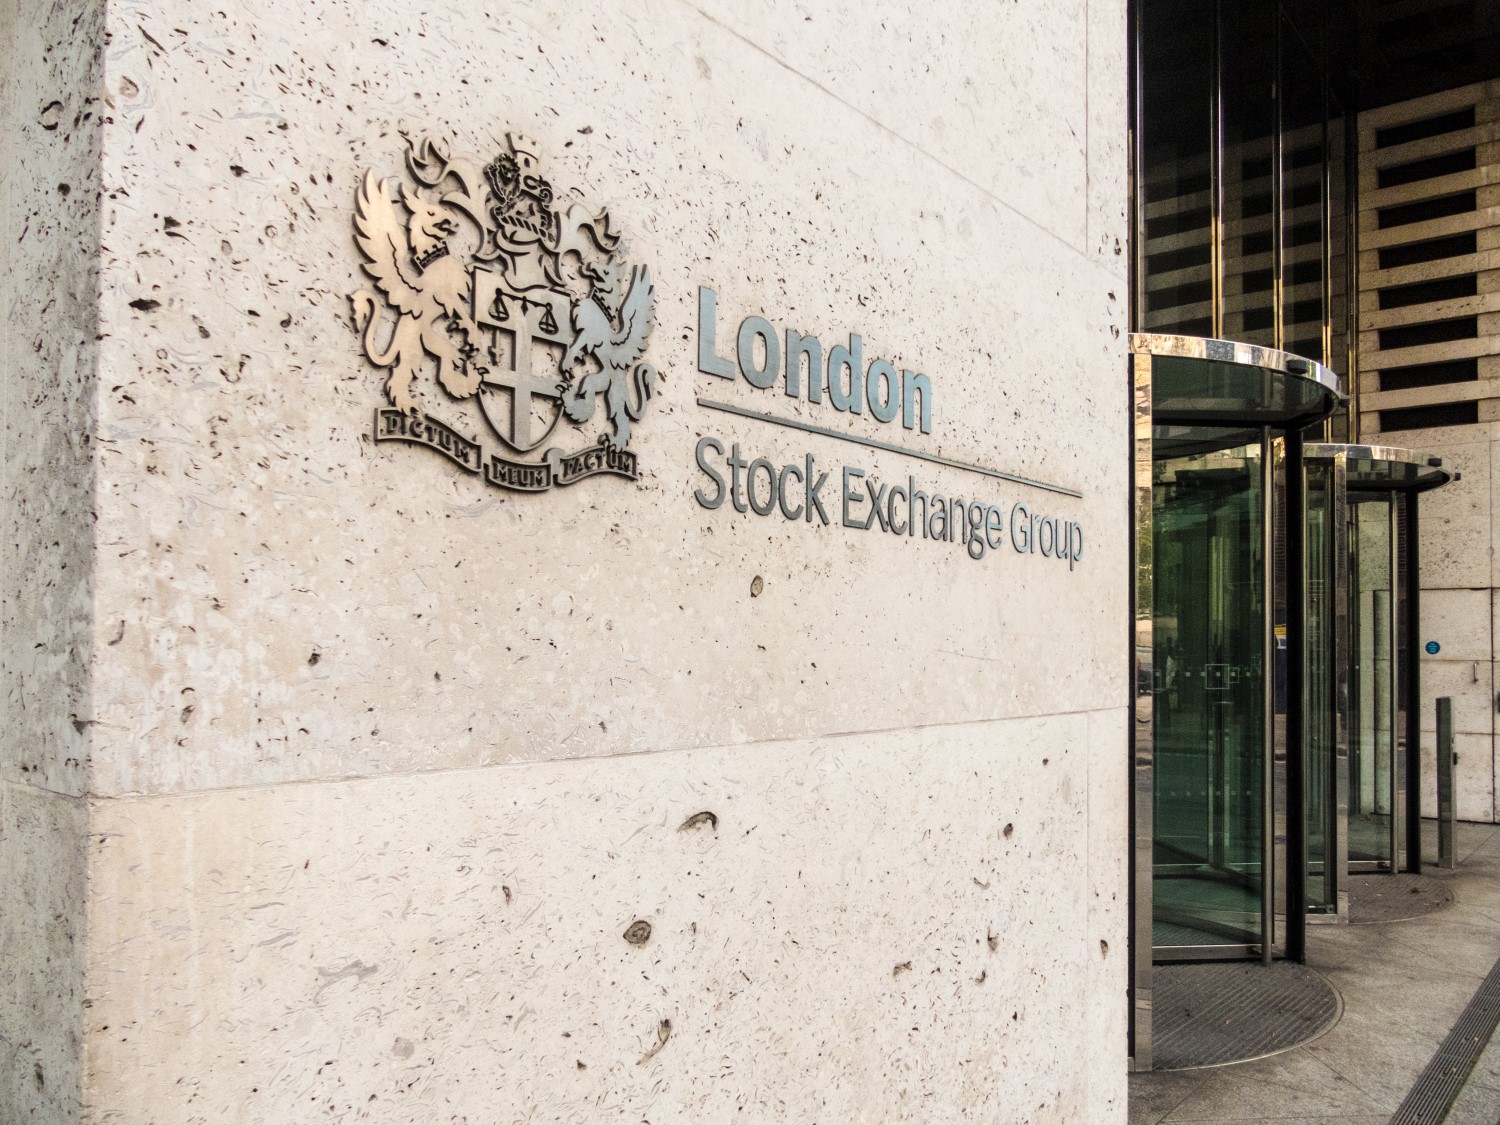 Startup Raises $3.9 Million In Tokenized Equity On London Stock Exchange Platform